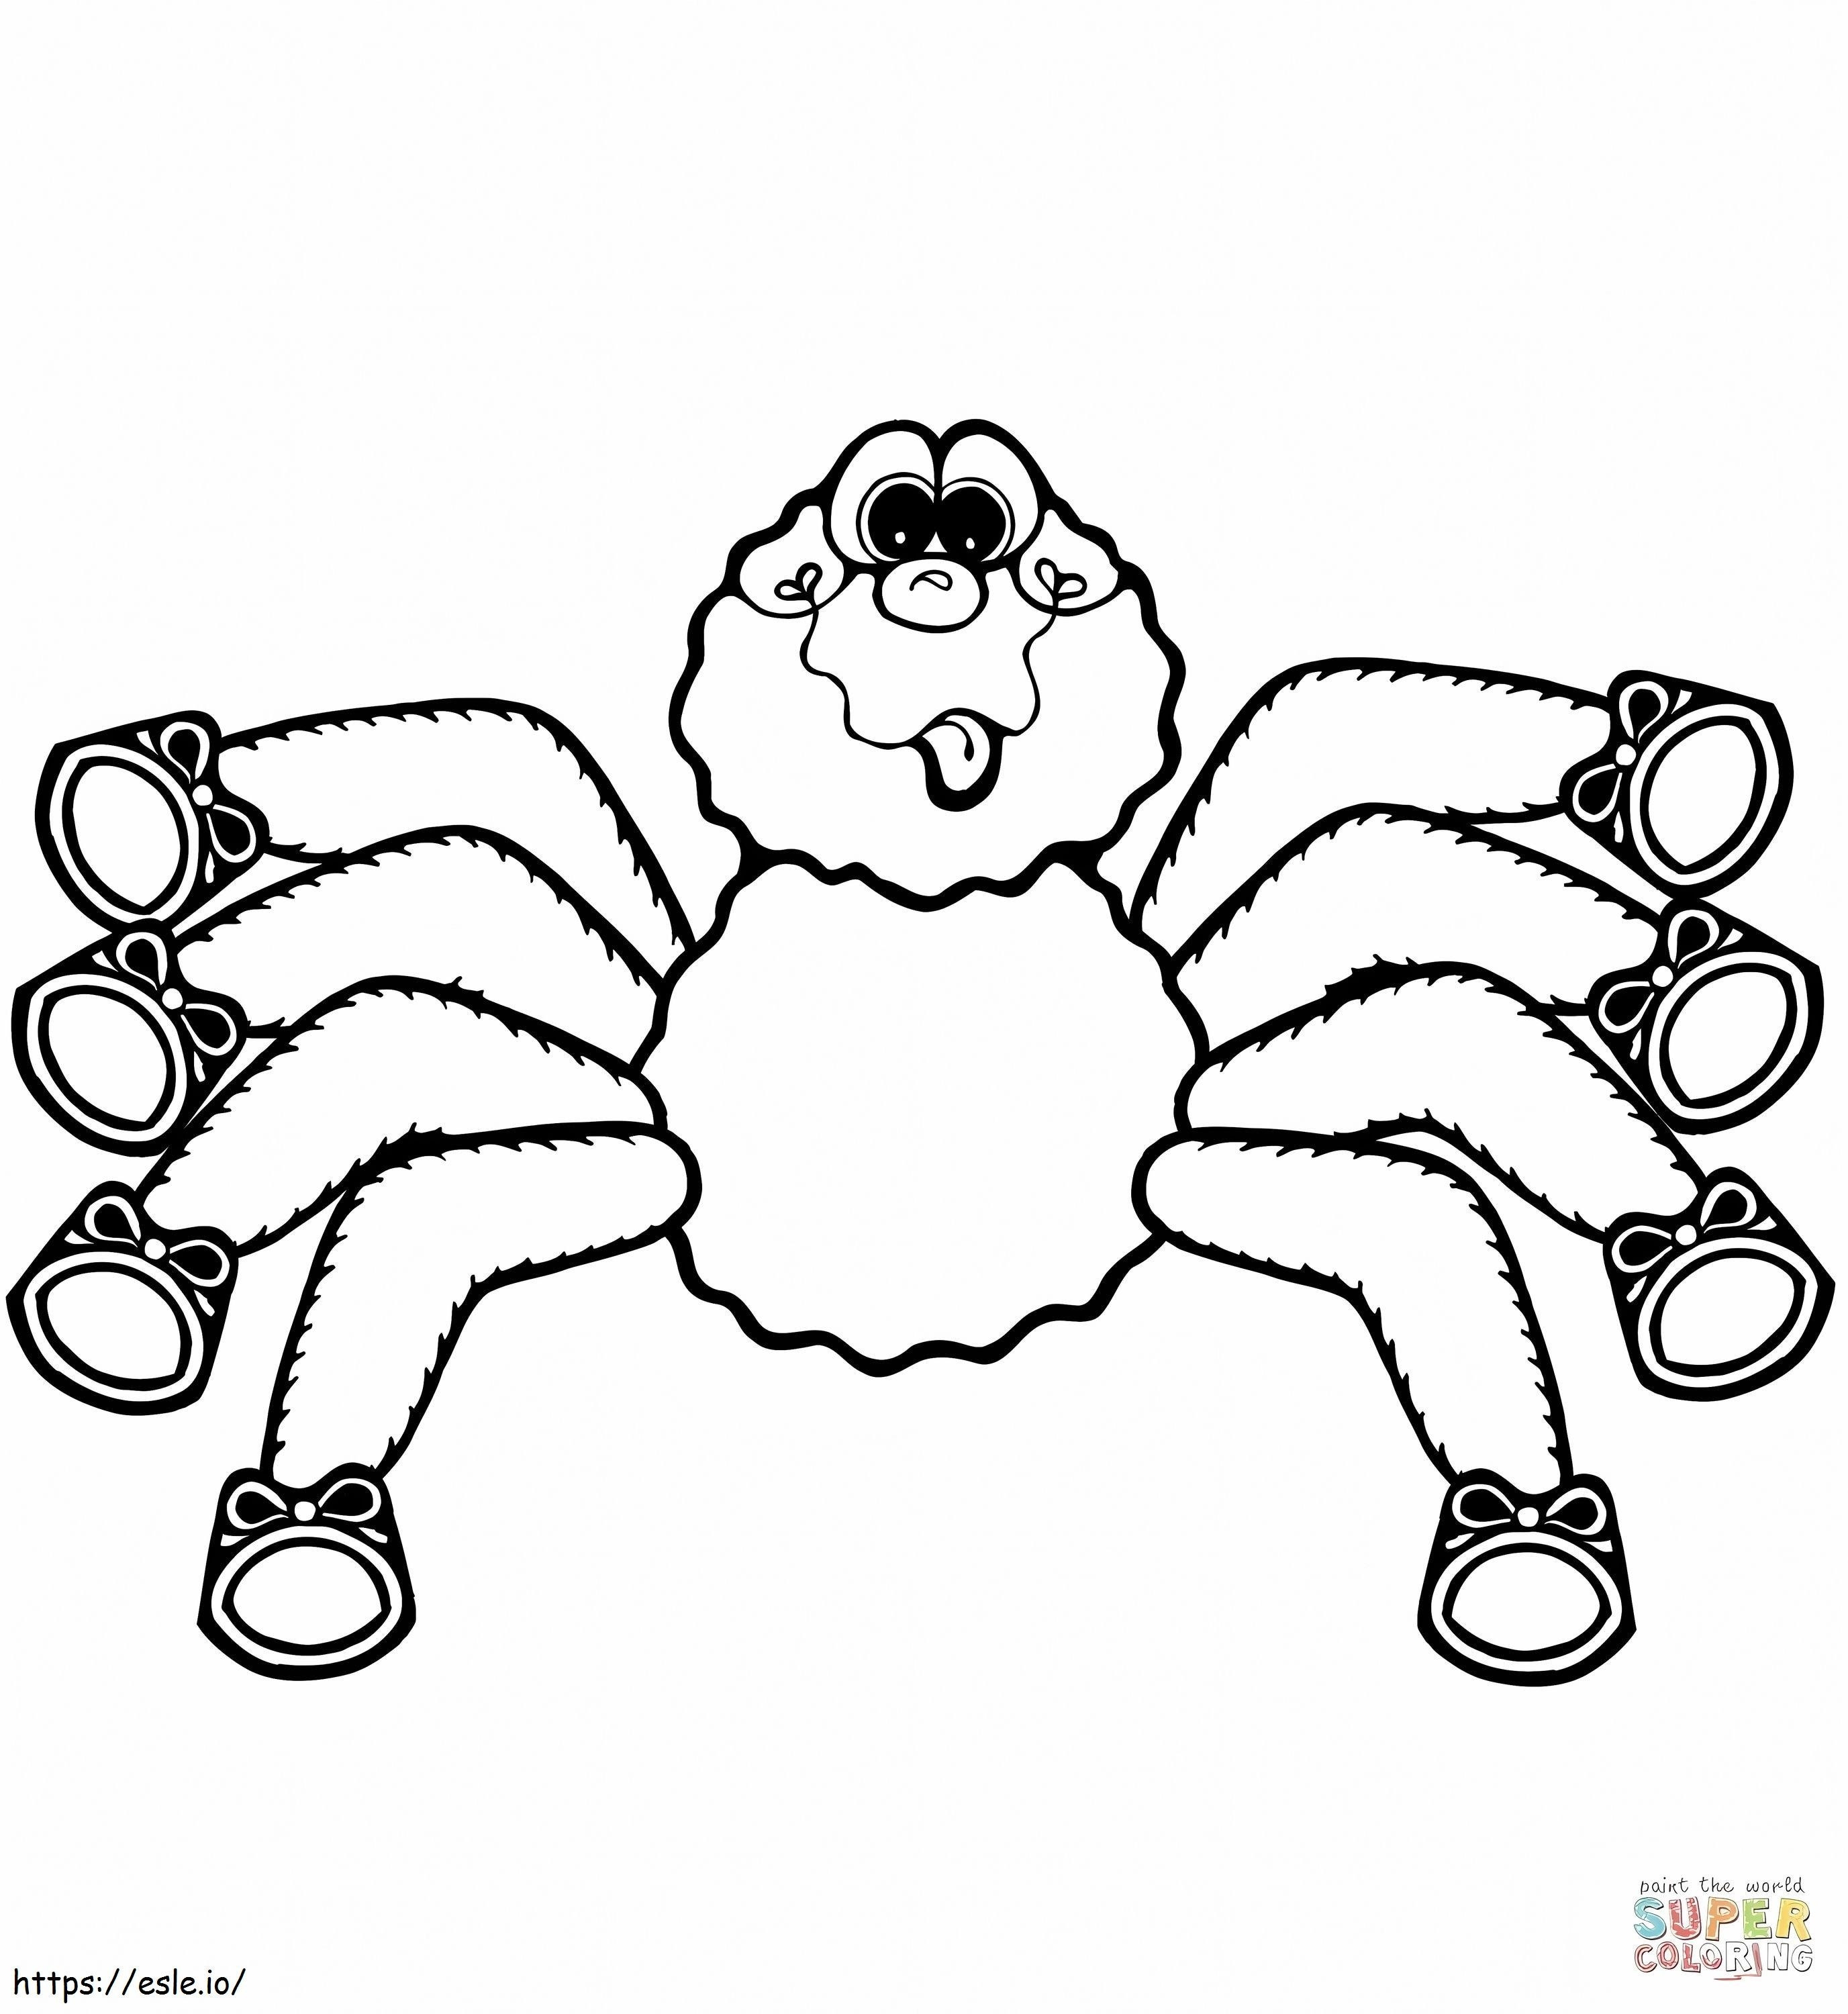 1545183164_Desen animat Păianjen 1 de colorat